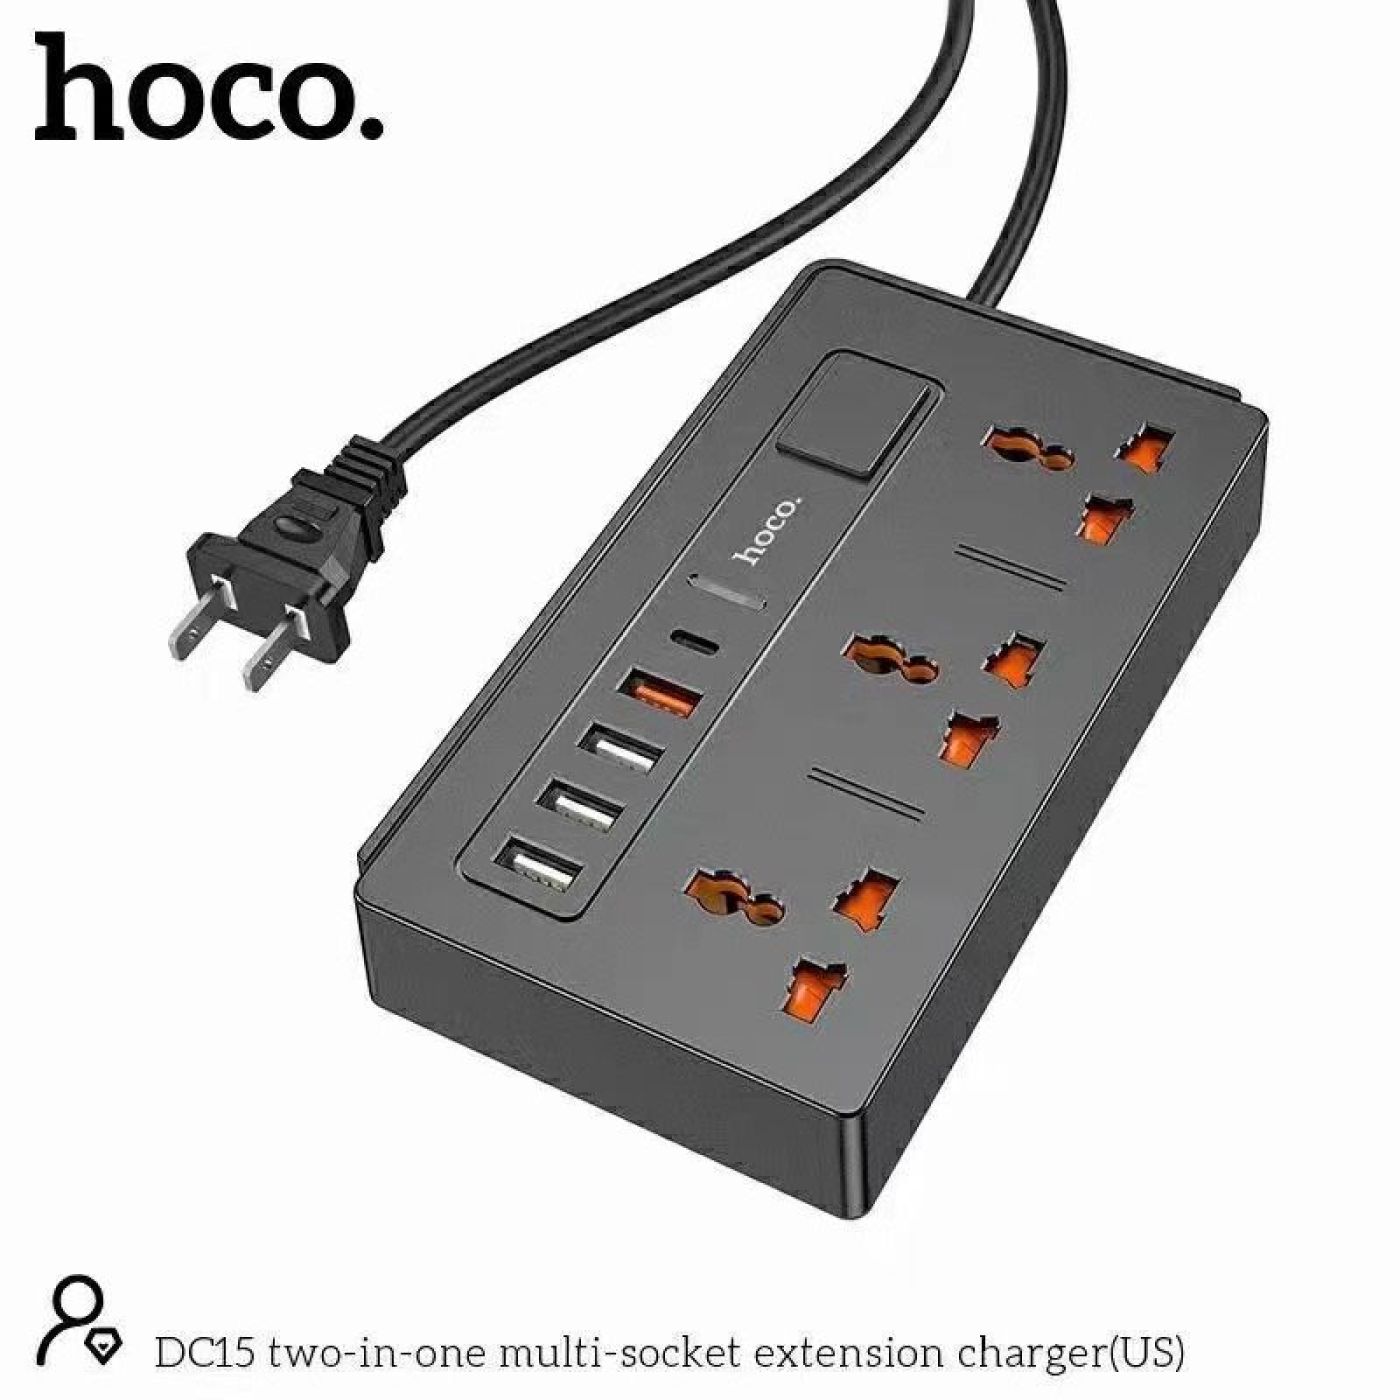 Ổ cắm điện đa năng Hoco DC15 sạc nhanh PD18W hỗ trợ 4 cổng USB- cổng AC 220V tiện dụng và an toàn